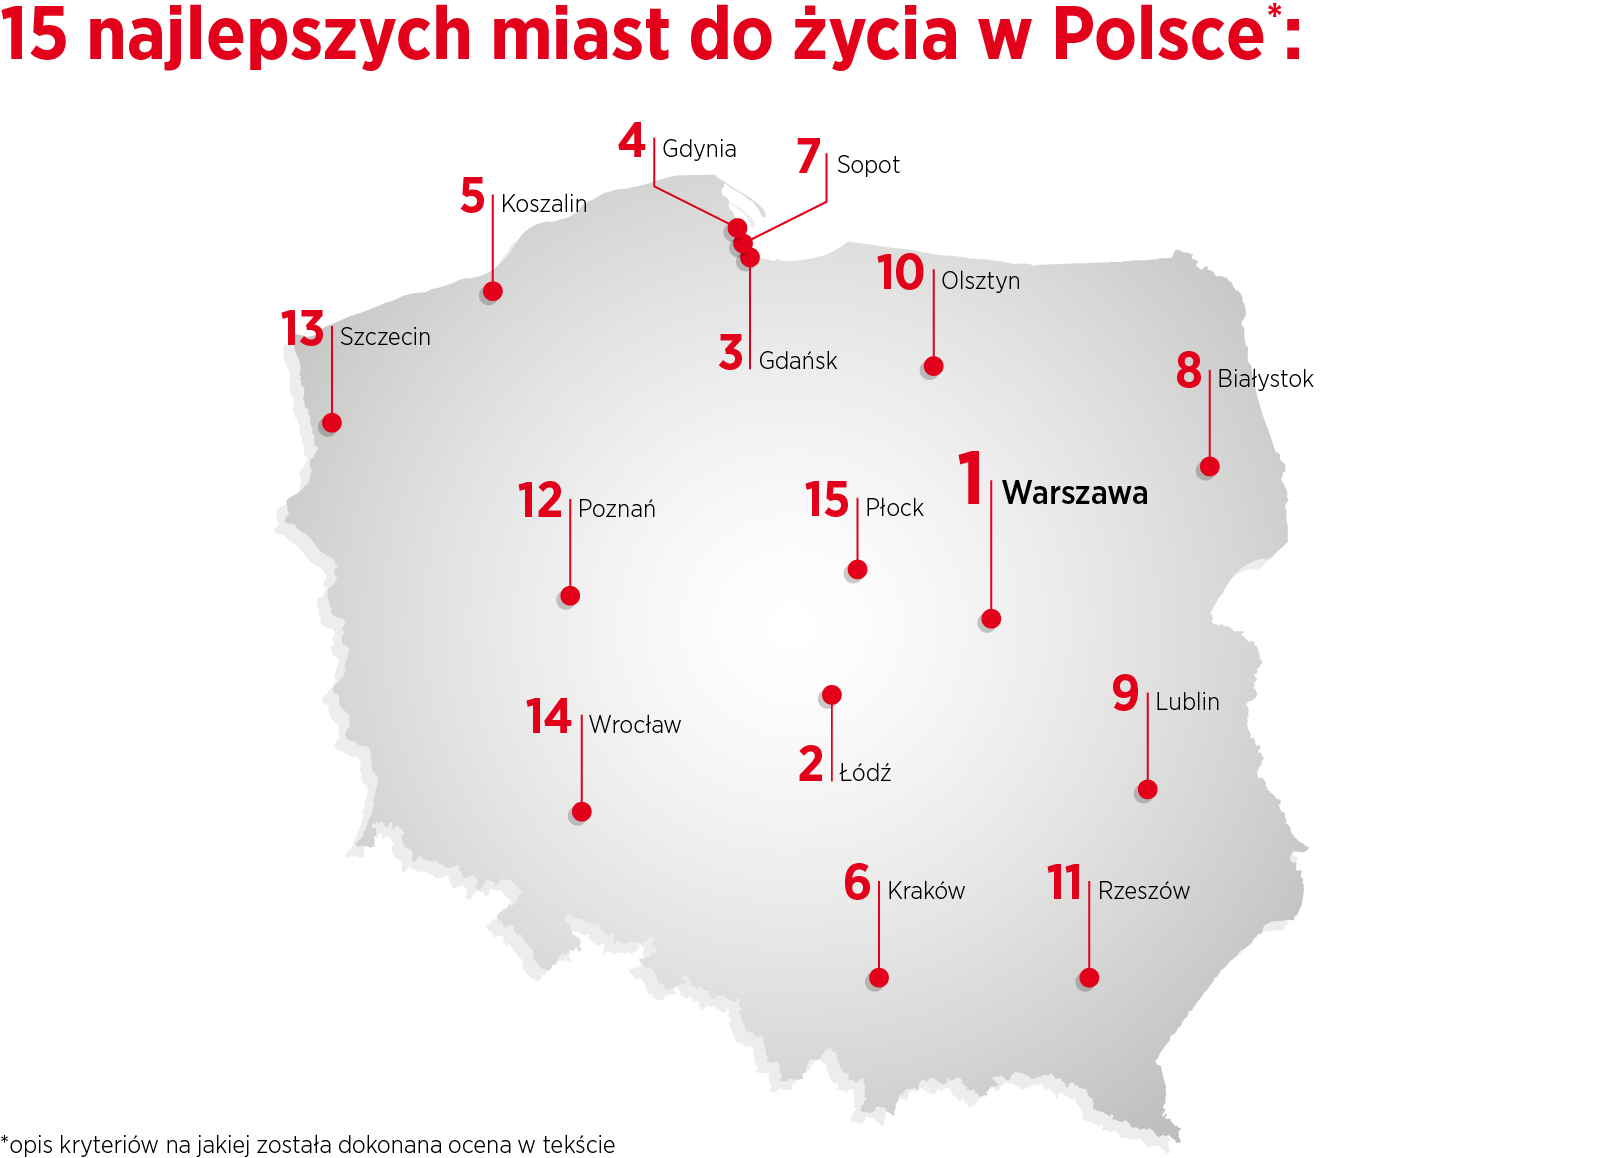 15 najlepszych miast do życia w Polsce